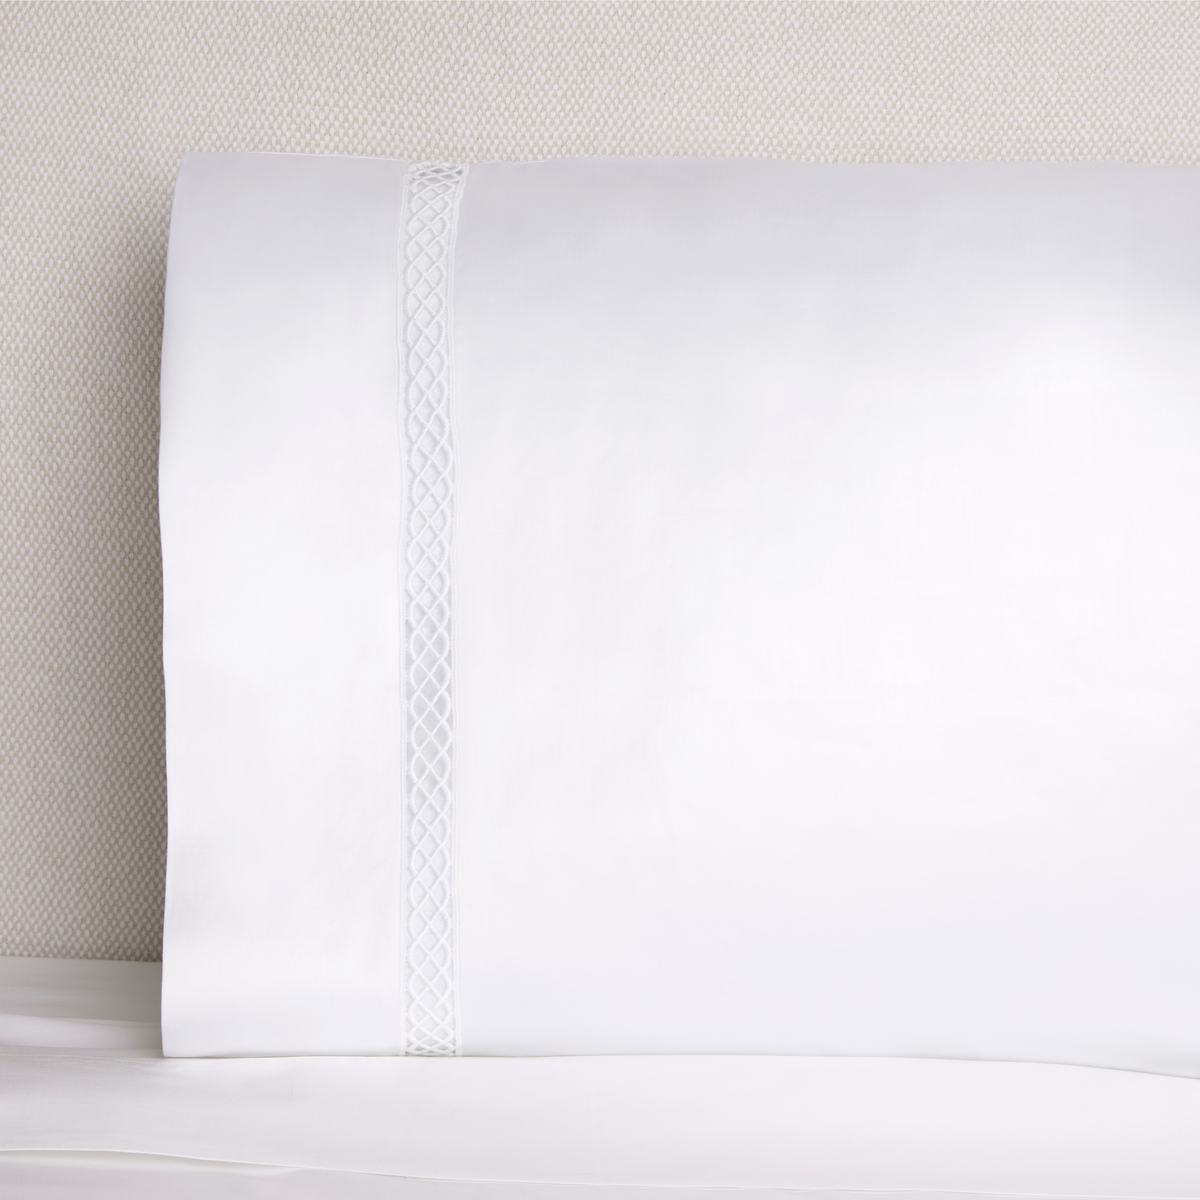 Sferra Giza 45 Ornato Bedding Pillowcase On Bed White Fine Linens